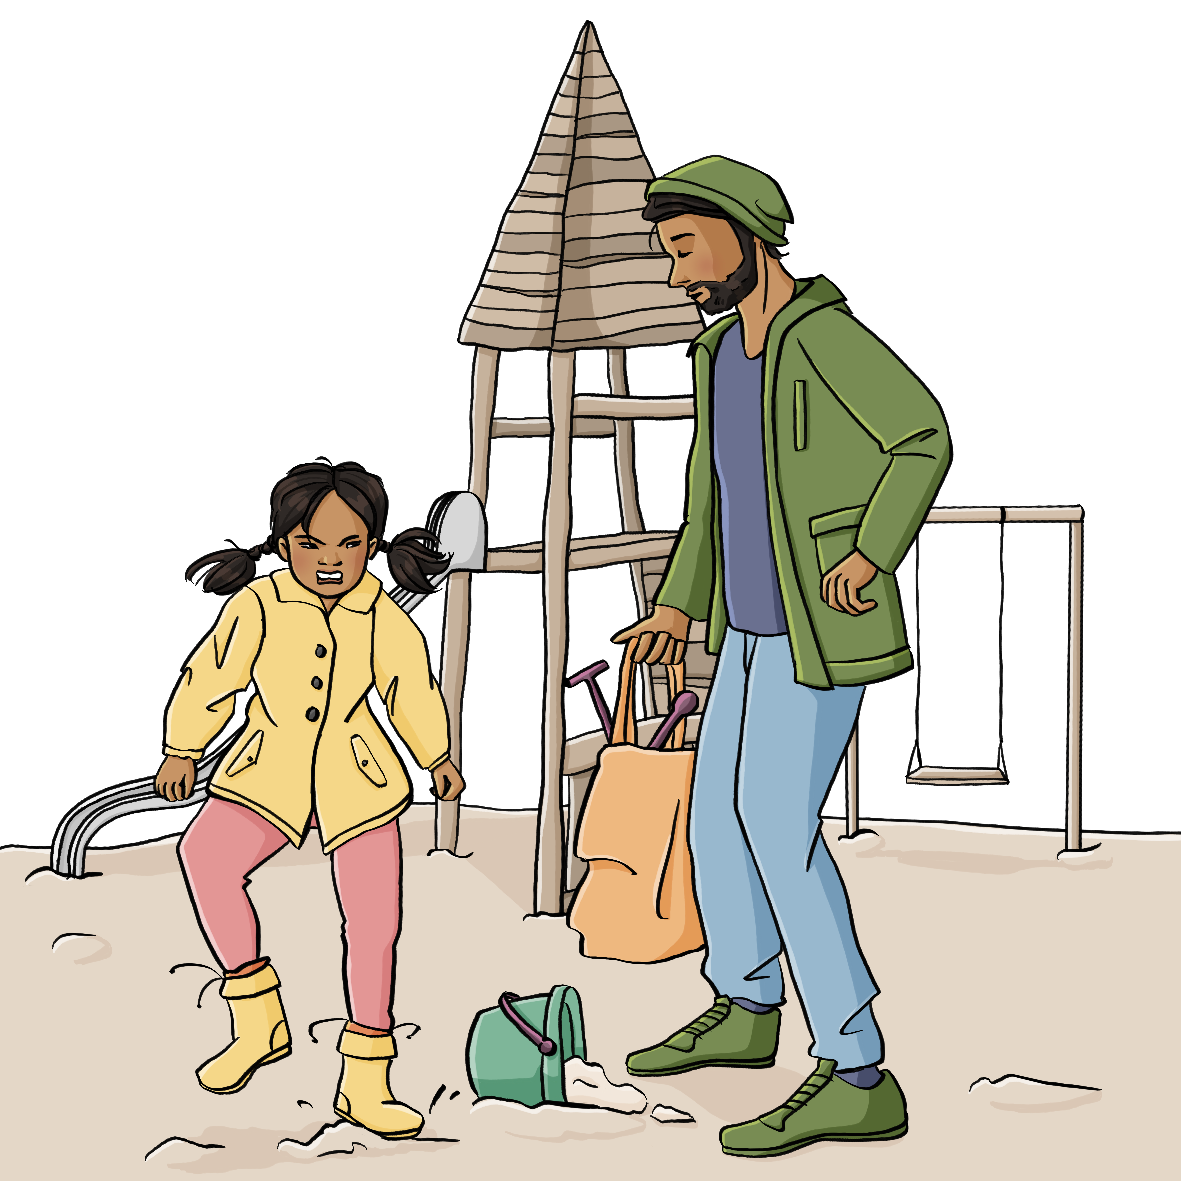 Alternativtext: Ein Mann und ein Mädchen stehen auf einem Spielplatz. Der Mann hält einen Beutel mit Sandspielzeug in der Hand. Das Mädchen schaut wütend und stampft mit dem Fuß auf.